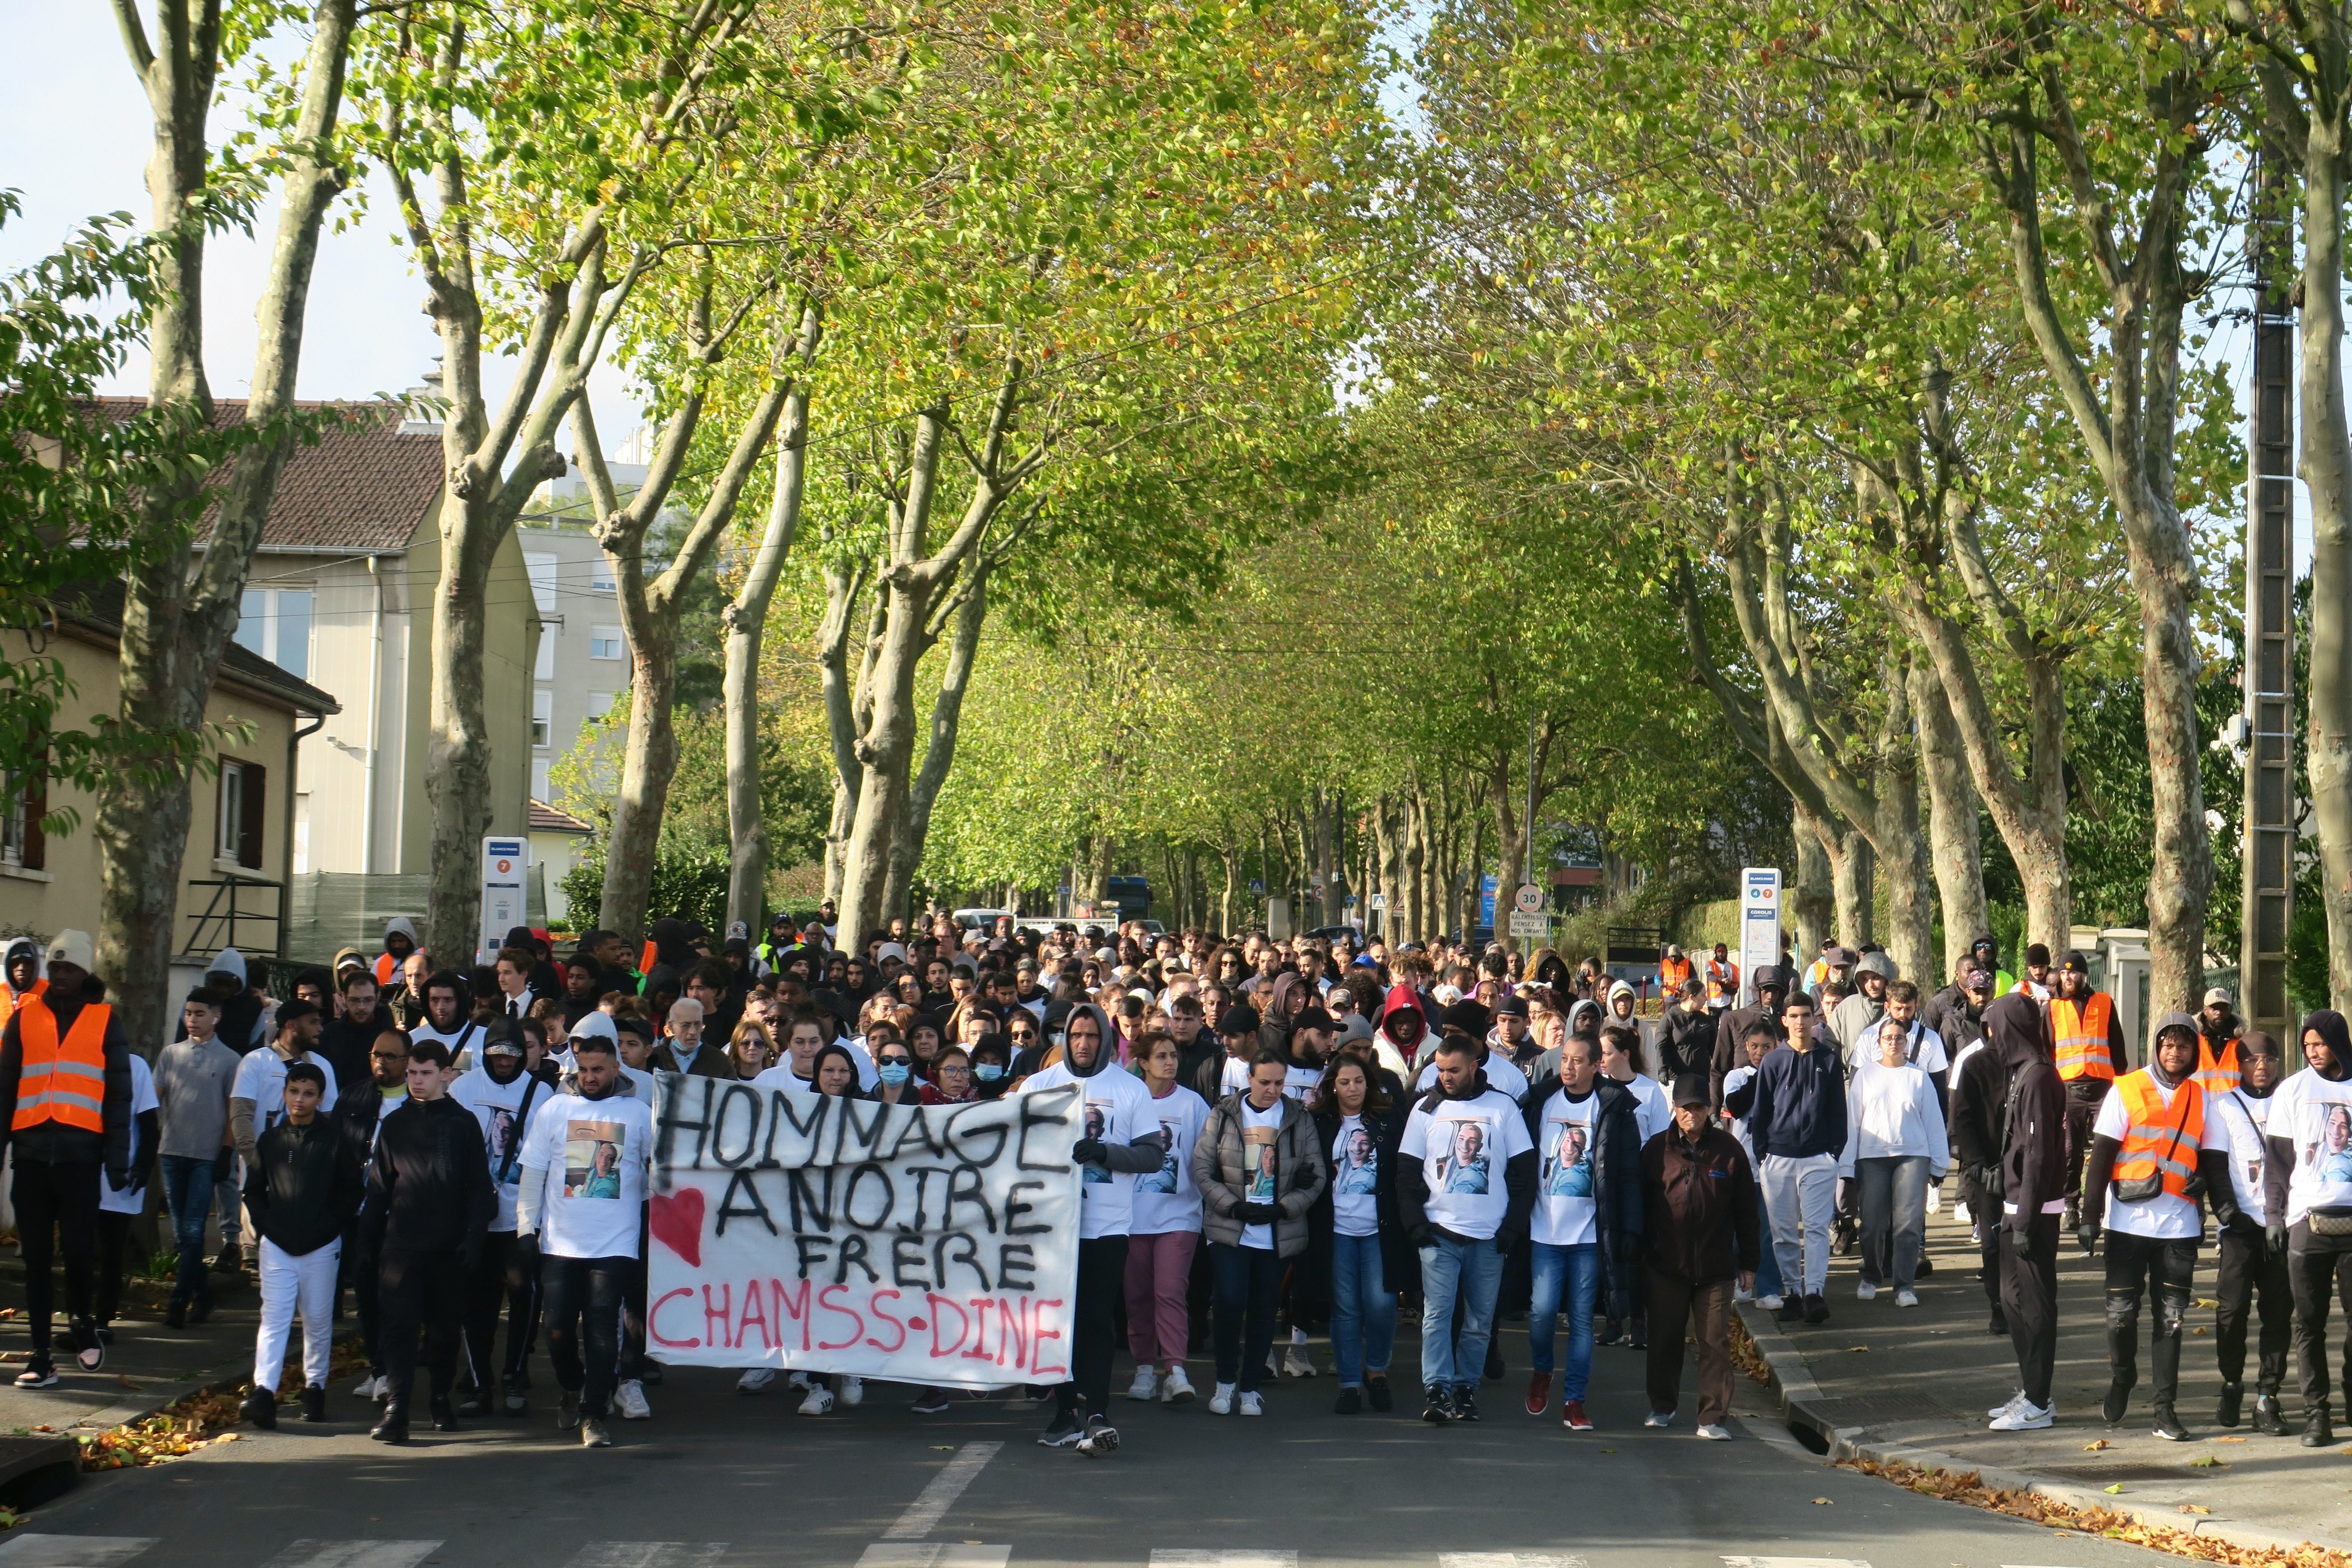 Beauvais, le 2 novembre. Près de 400 personnes étaient rassemblées dans le quartier Argentine pour rendre hommage à Chamss-Dine. LP/Simon Gourru